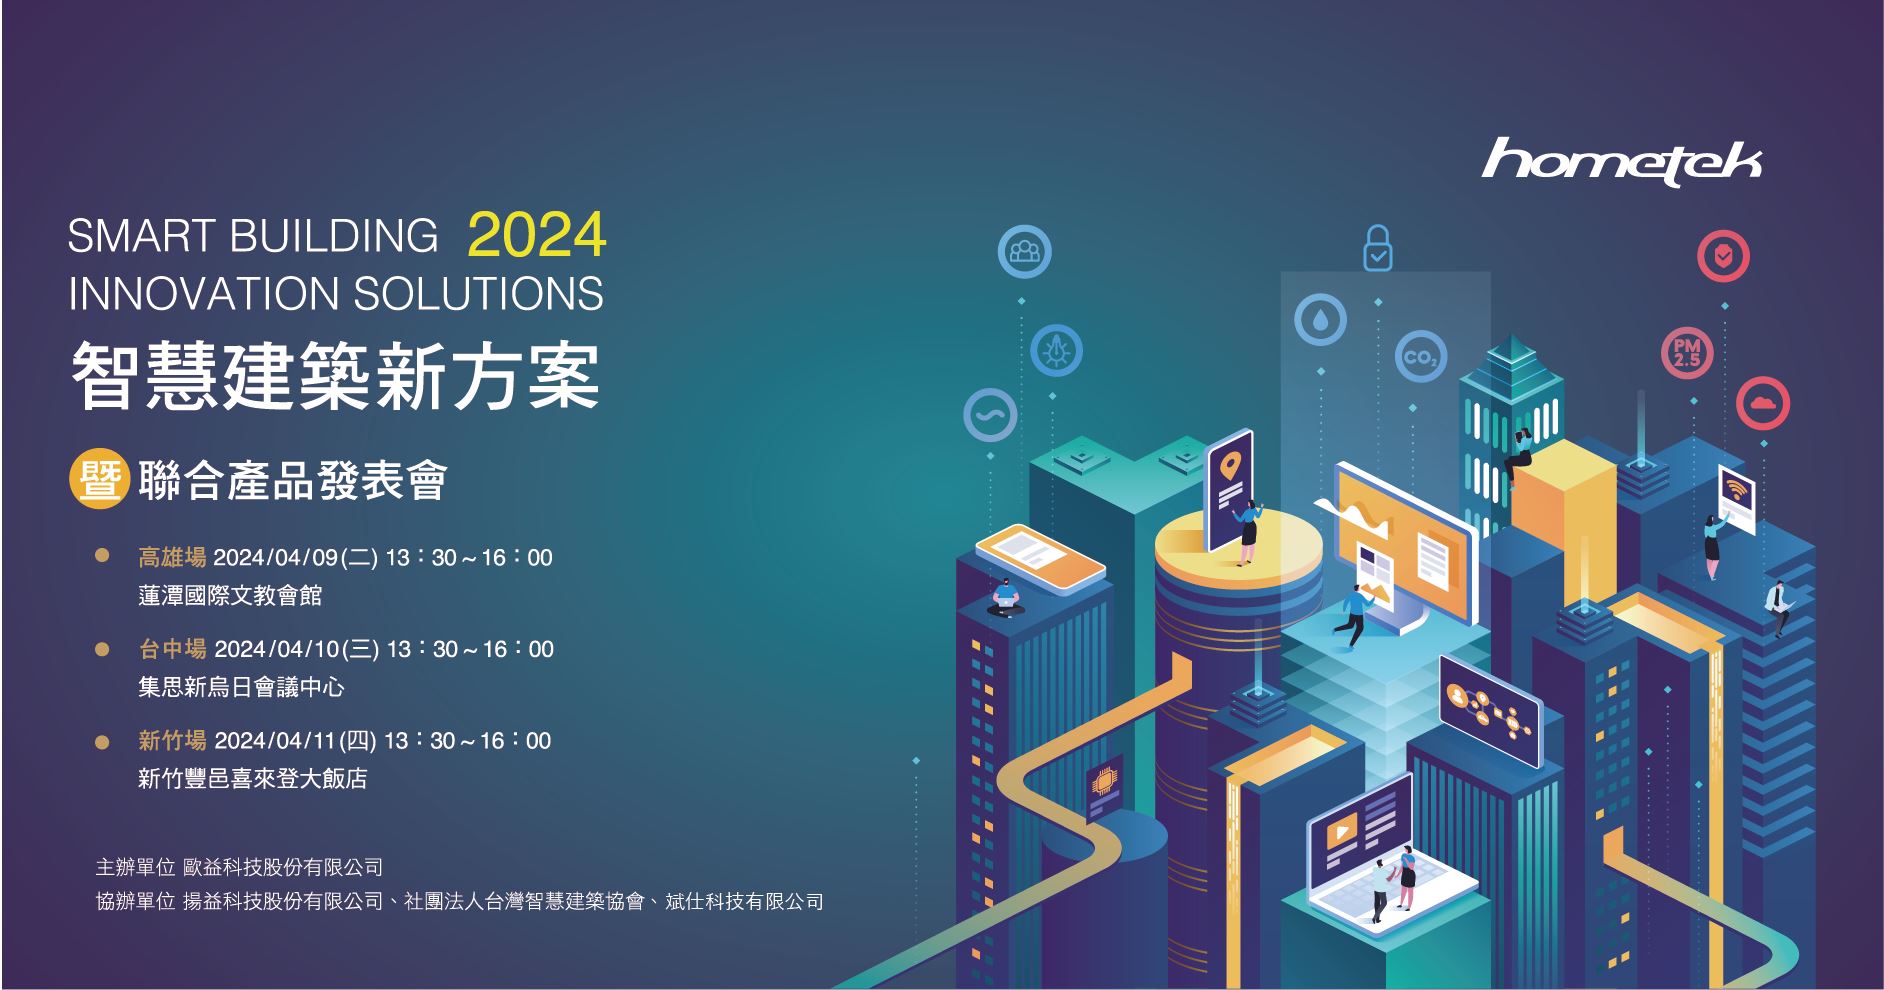 2024智慧建築創新方案-聯合產品發表會